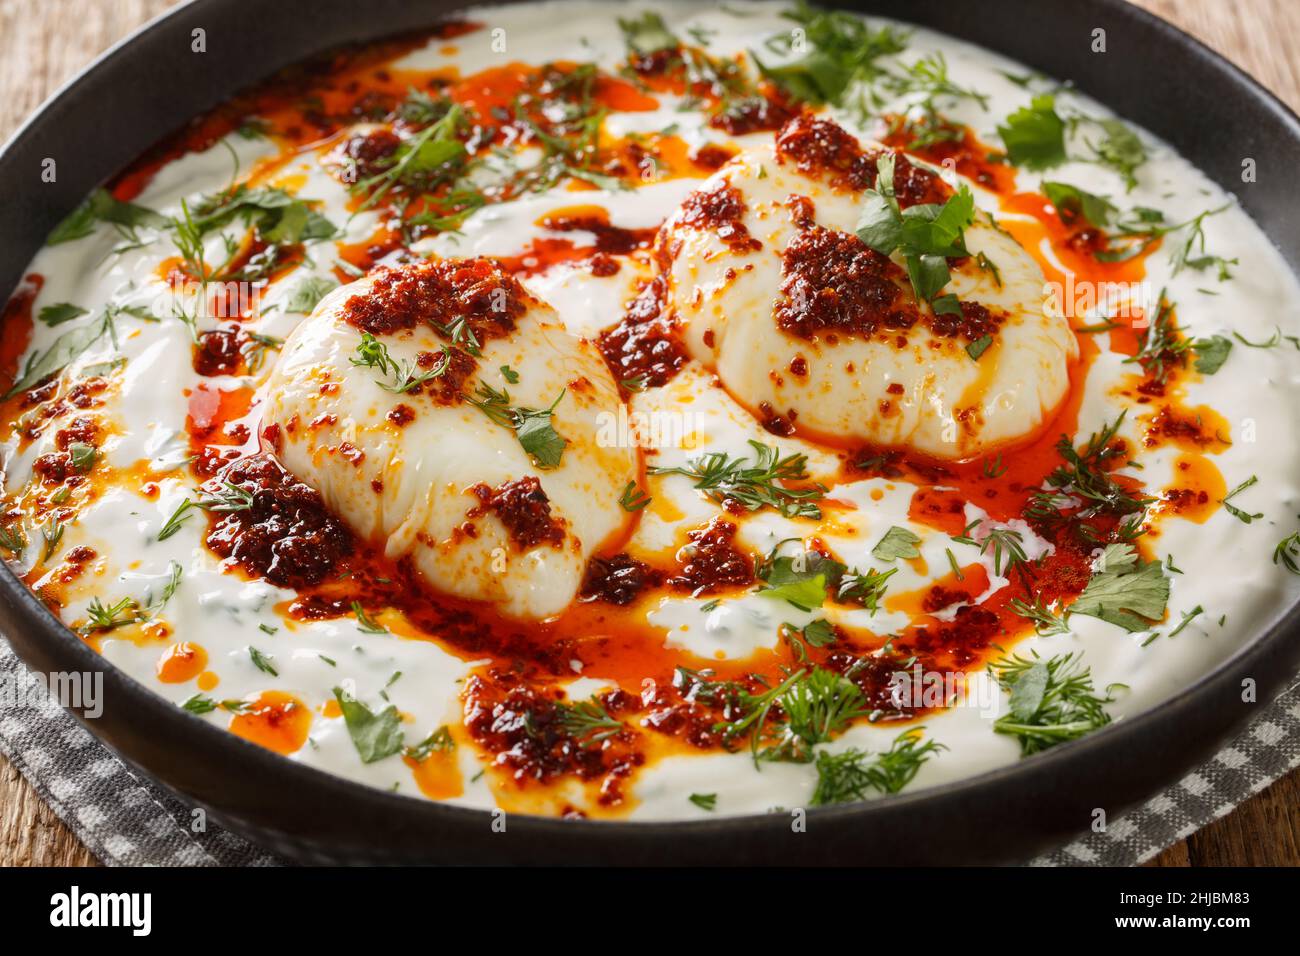 Desayuno turco sencillo y salado Cilbir es perfectamente escalfado huevos, servidos sobre un delicioso yogur con guarnición y mantequilla picante con hojuelas de pimiento rojo clos Foto de stock